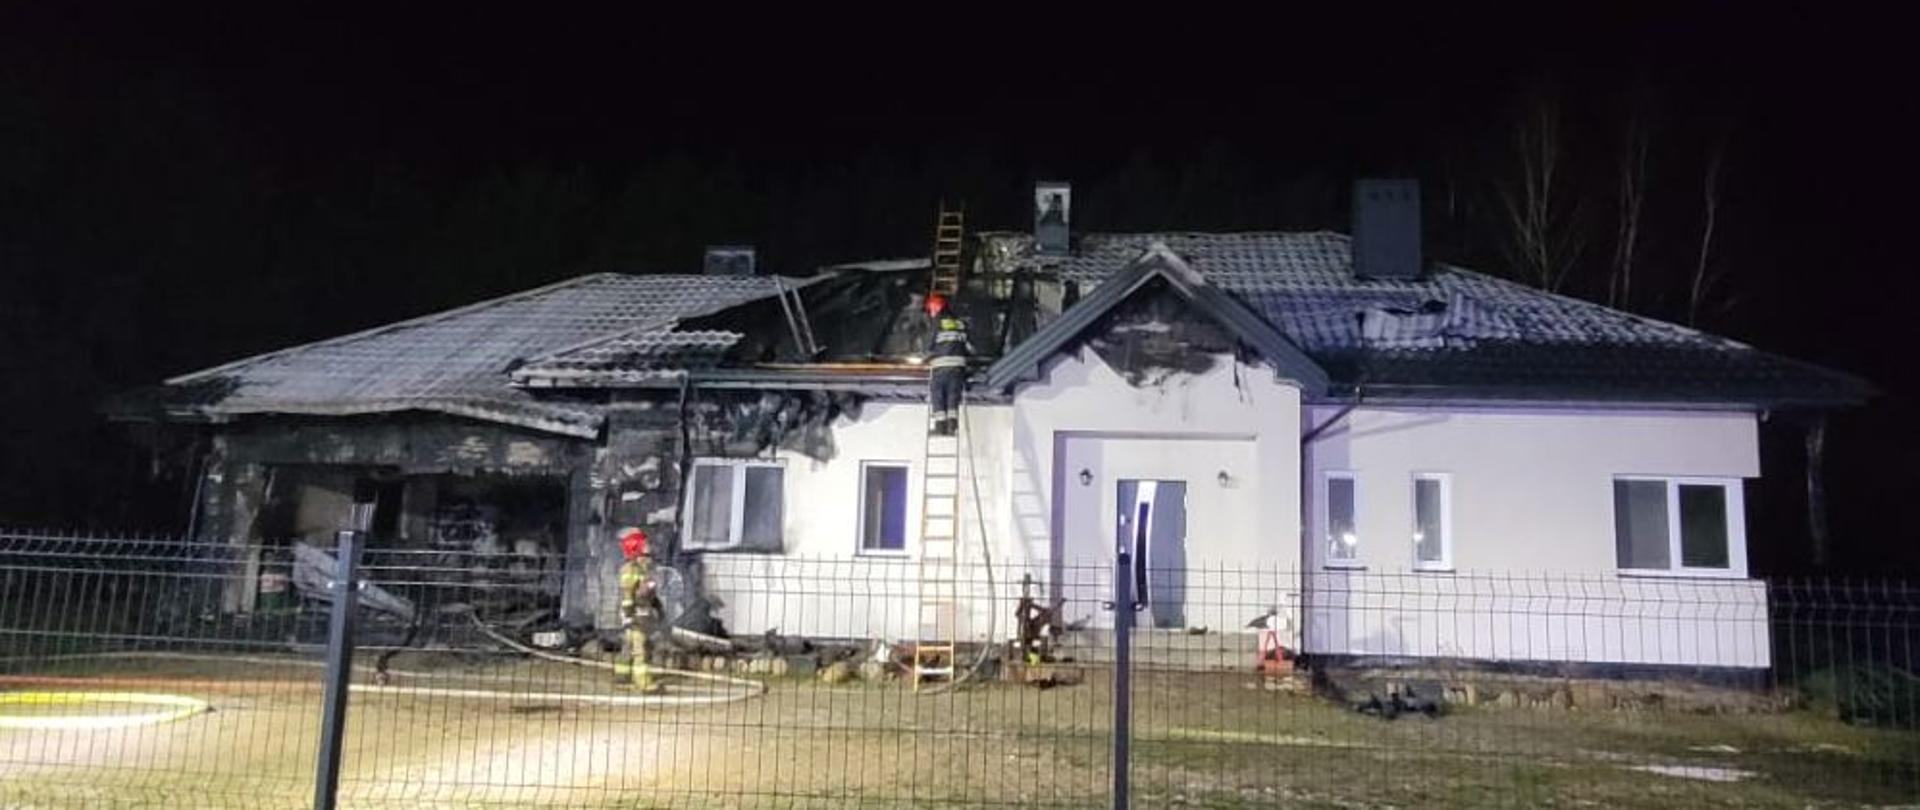 dom jednorodzinny po ugaszonym pożarze, strażacy przy budynku na drabinie. jedna część domu spalona